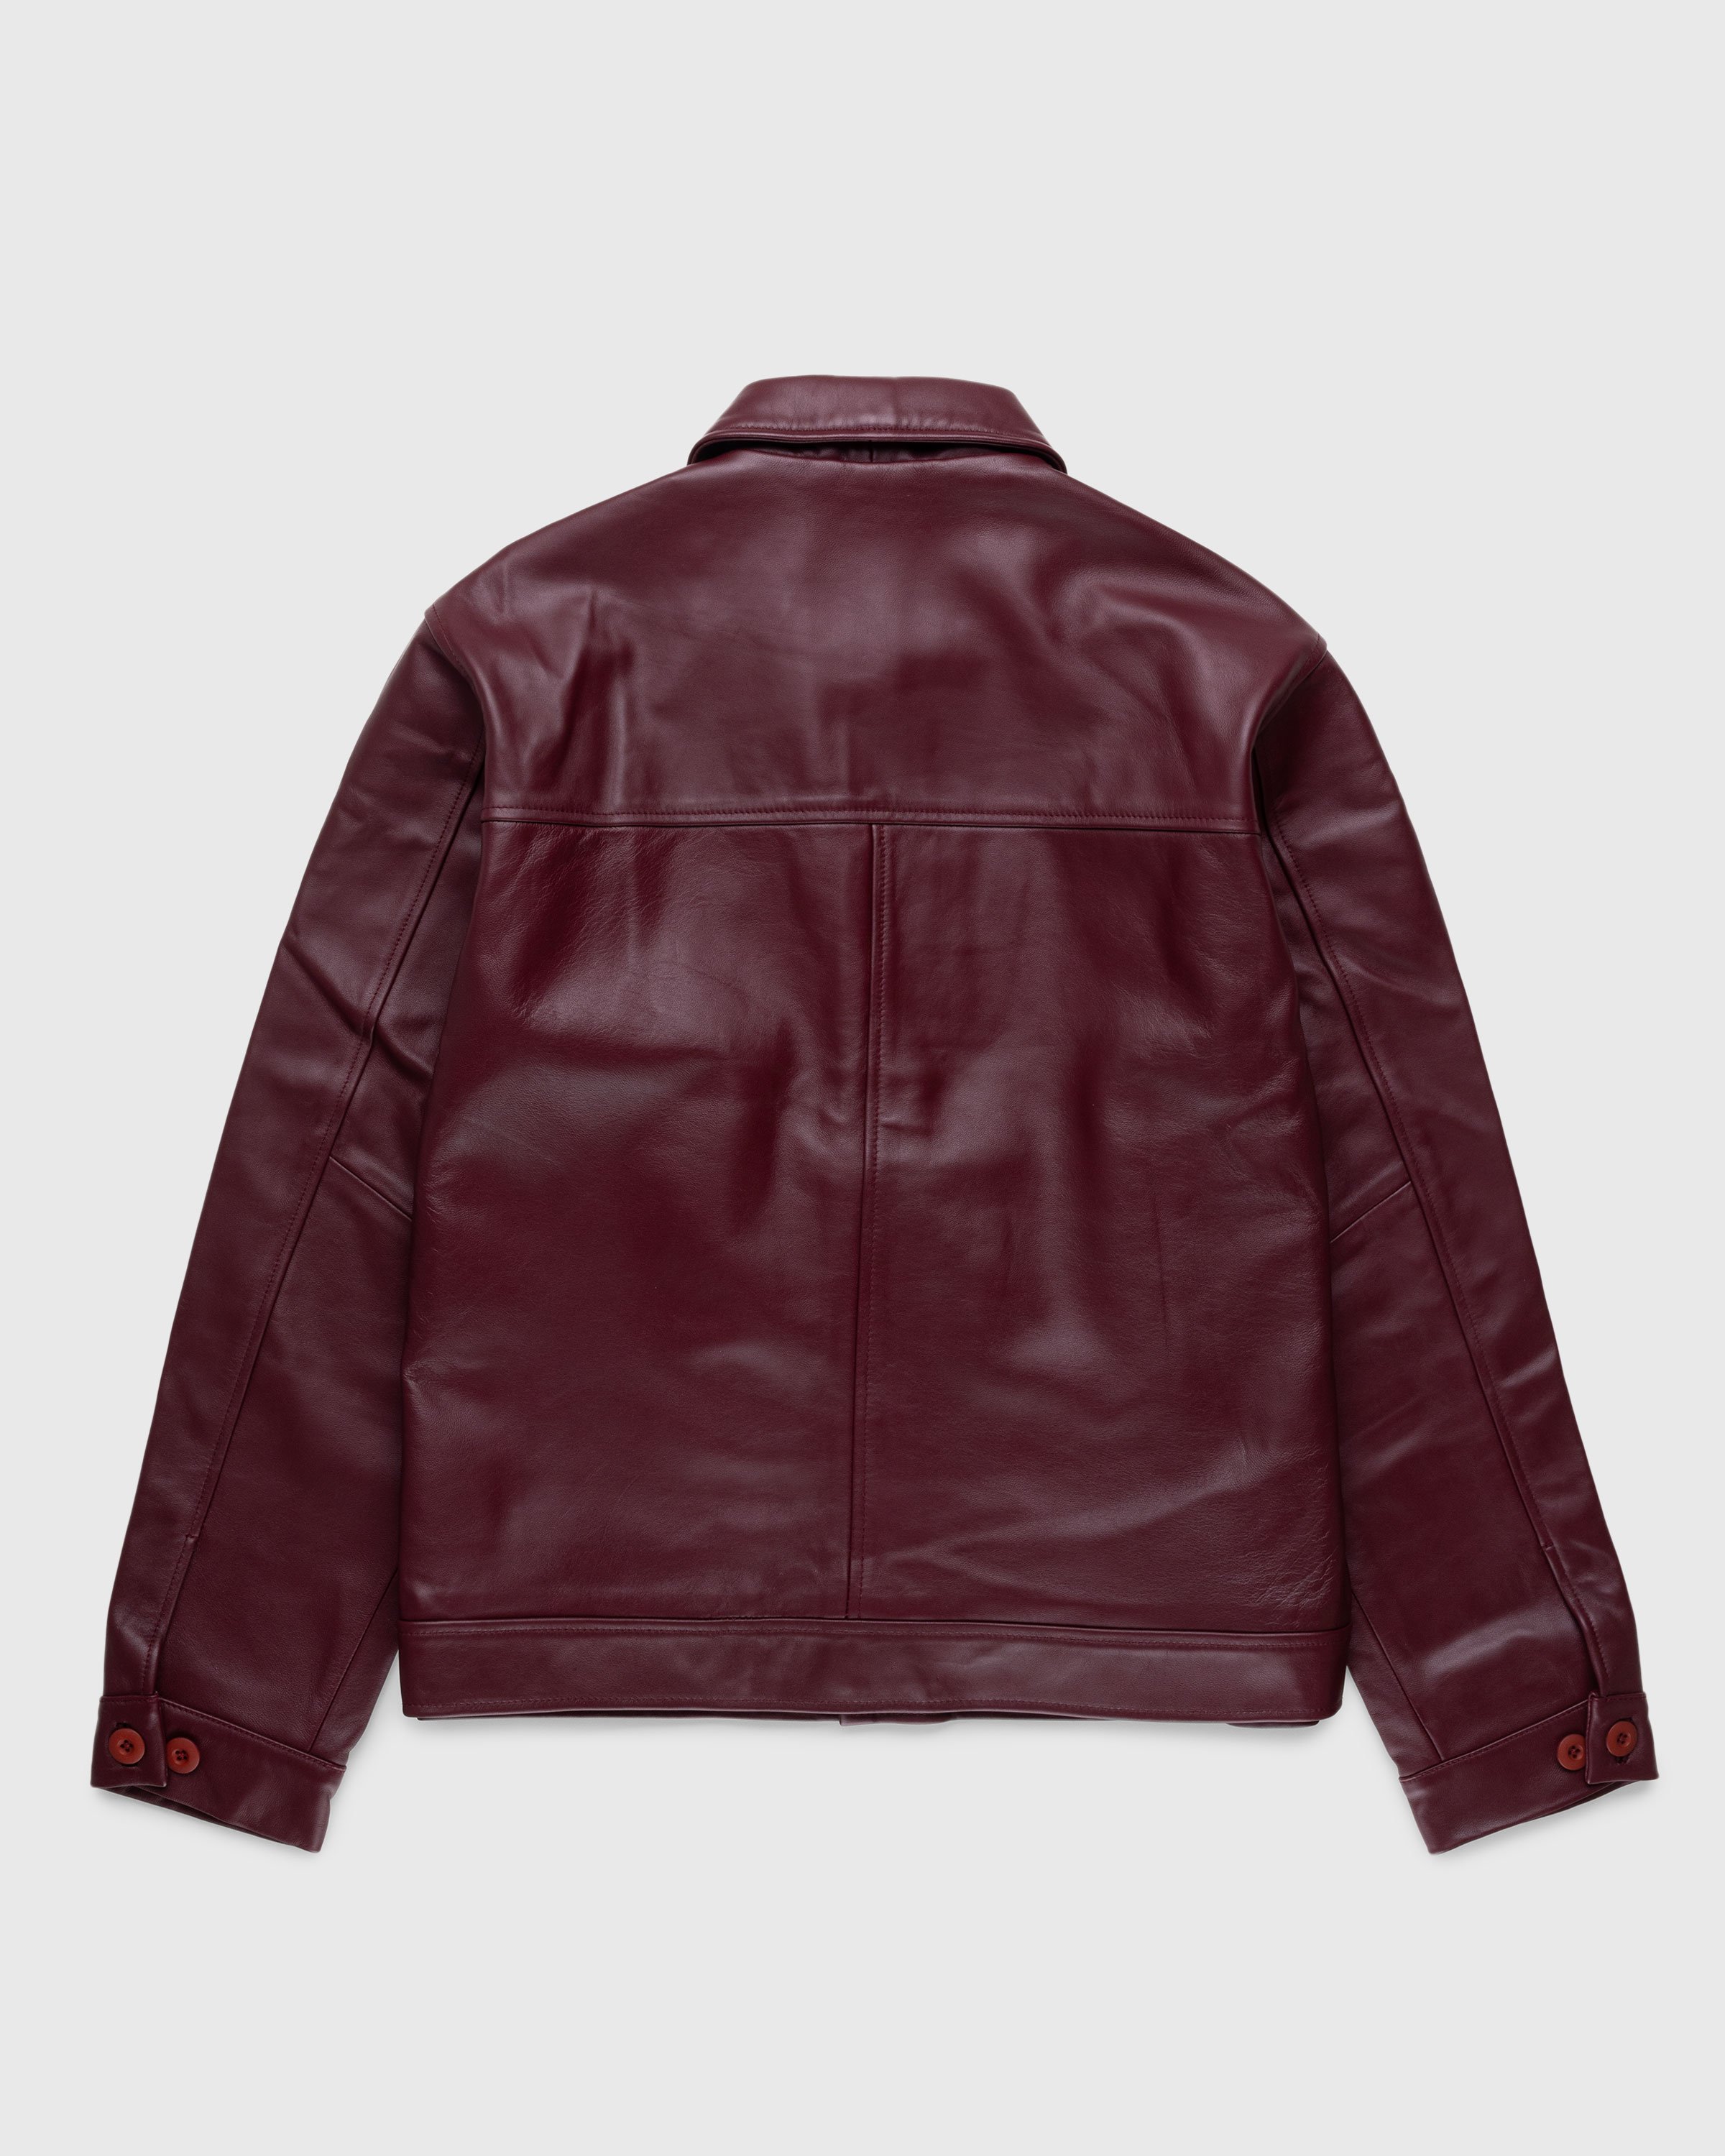 Highsnobiety HS05 - Leather Jacket Burgundy - Clothing - Red - Image 2